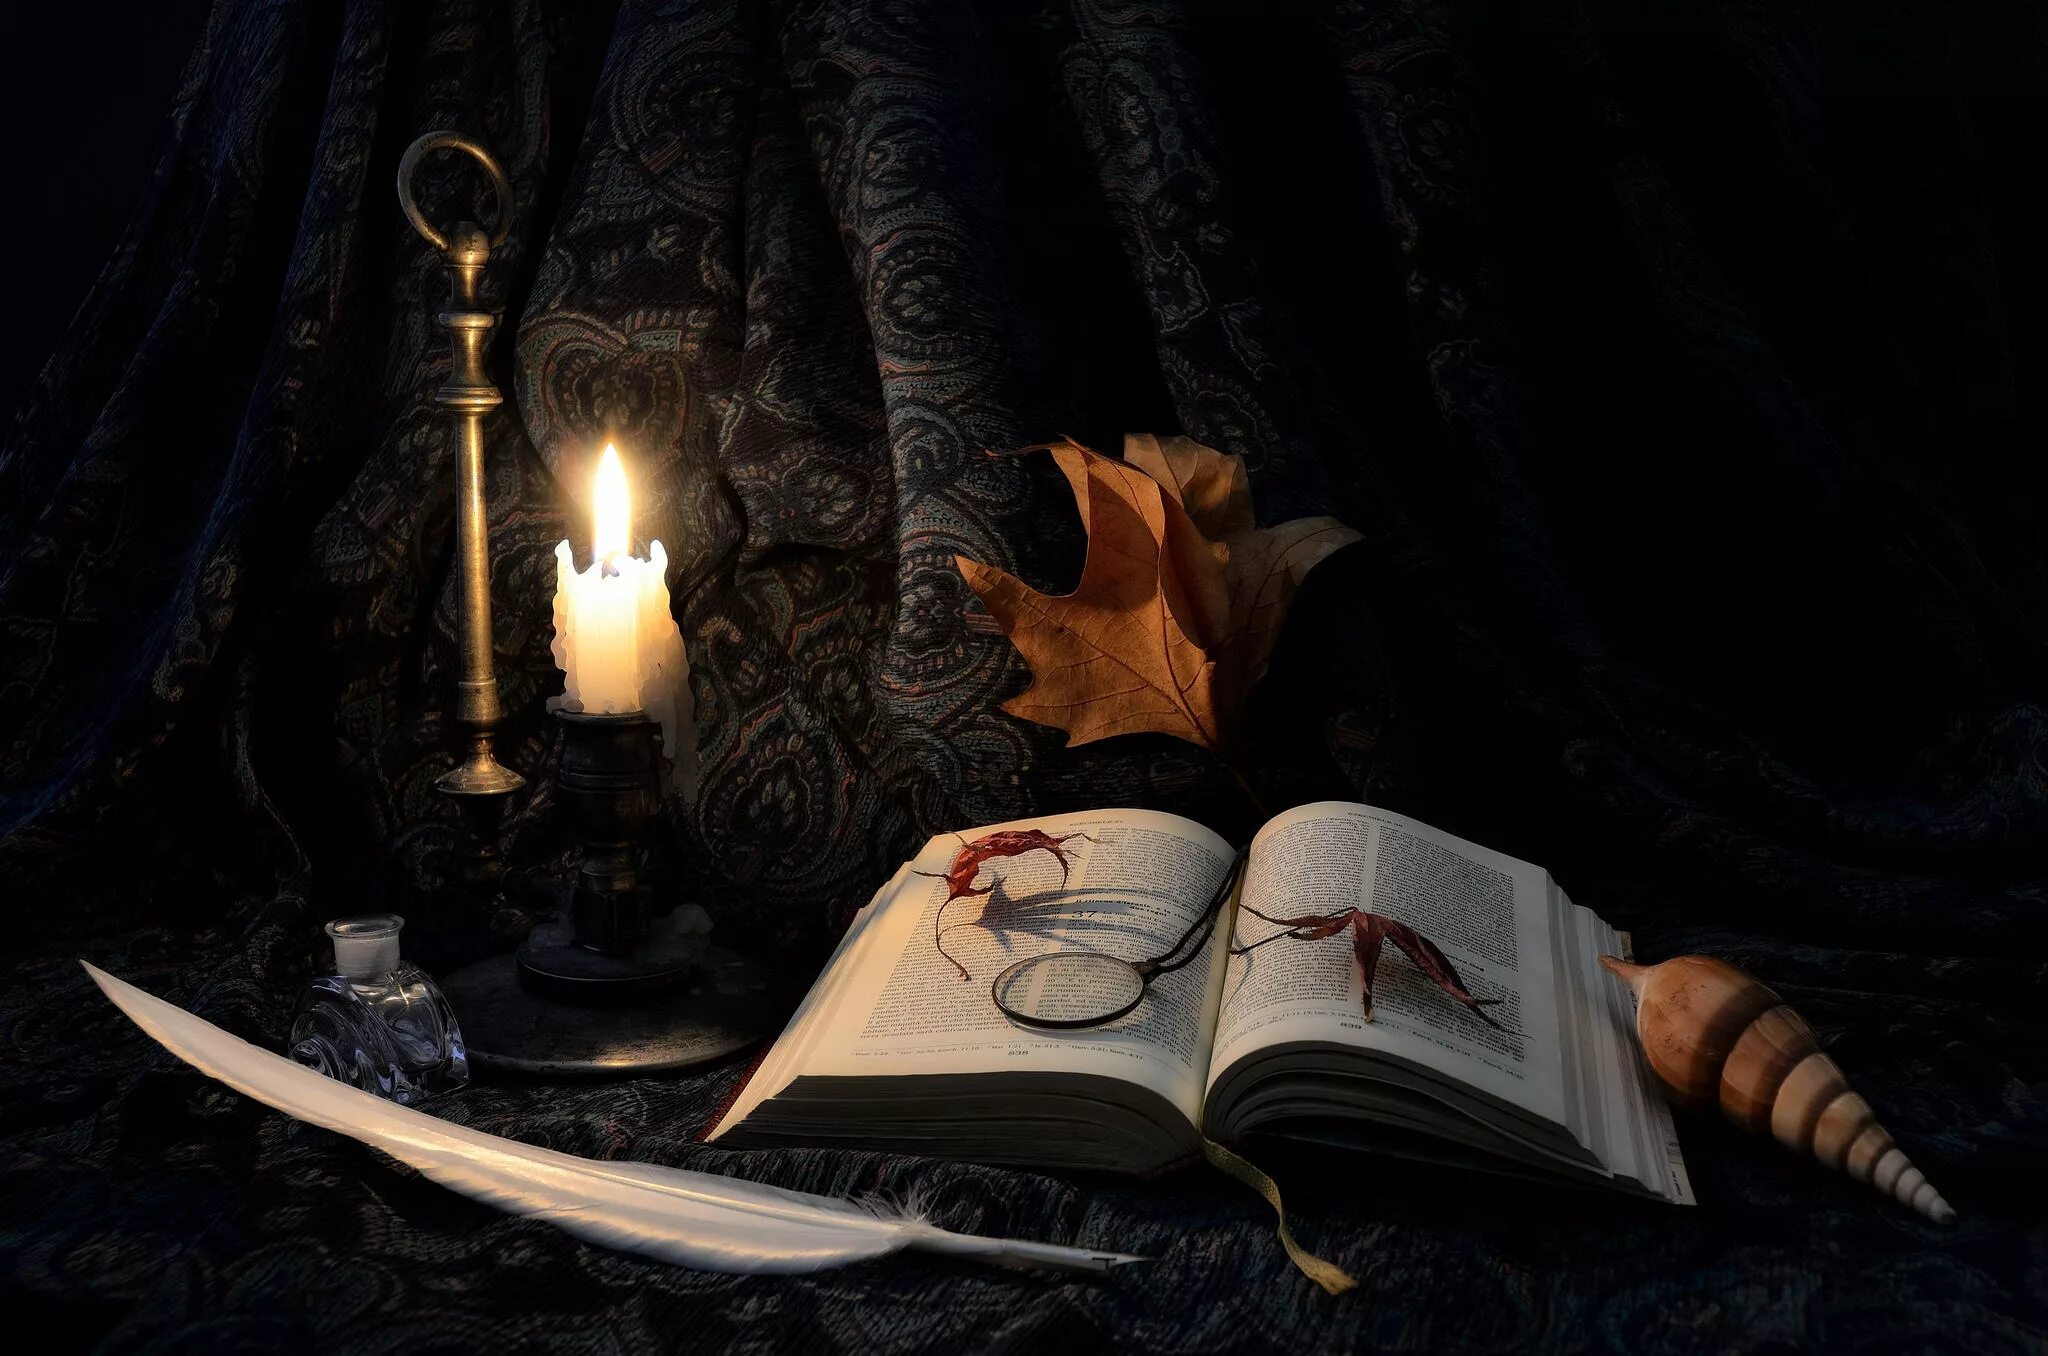 Книга с пером. Стол писателя. Натюрморт с книгой и свечой. Рабочий стол писателя. Темная поэзия